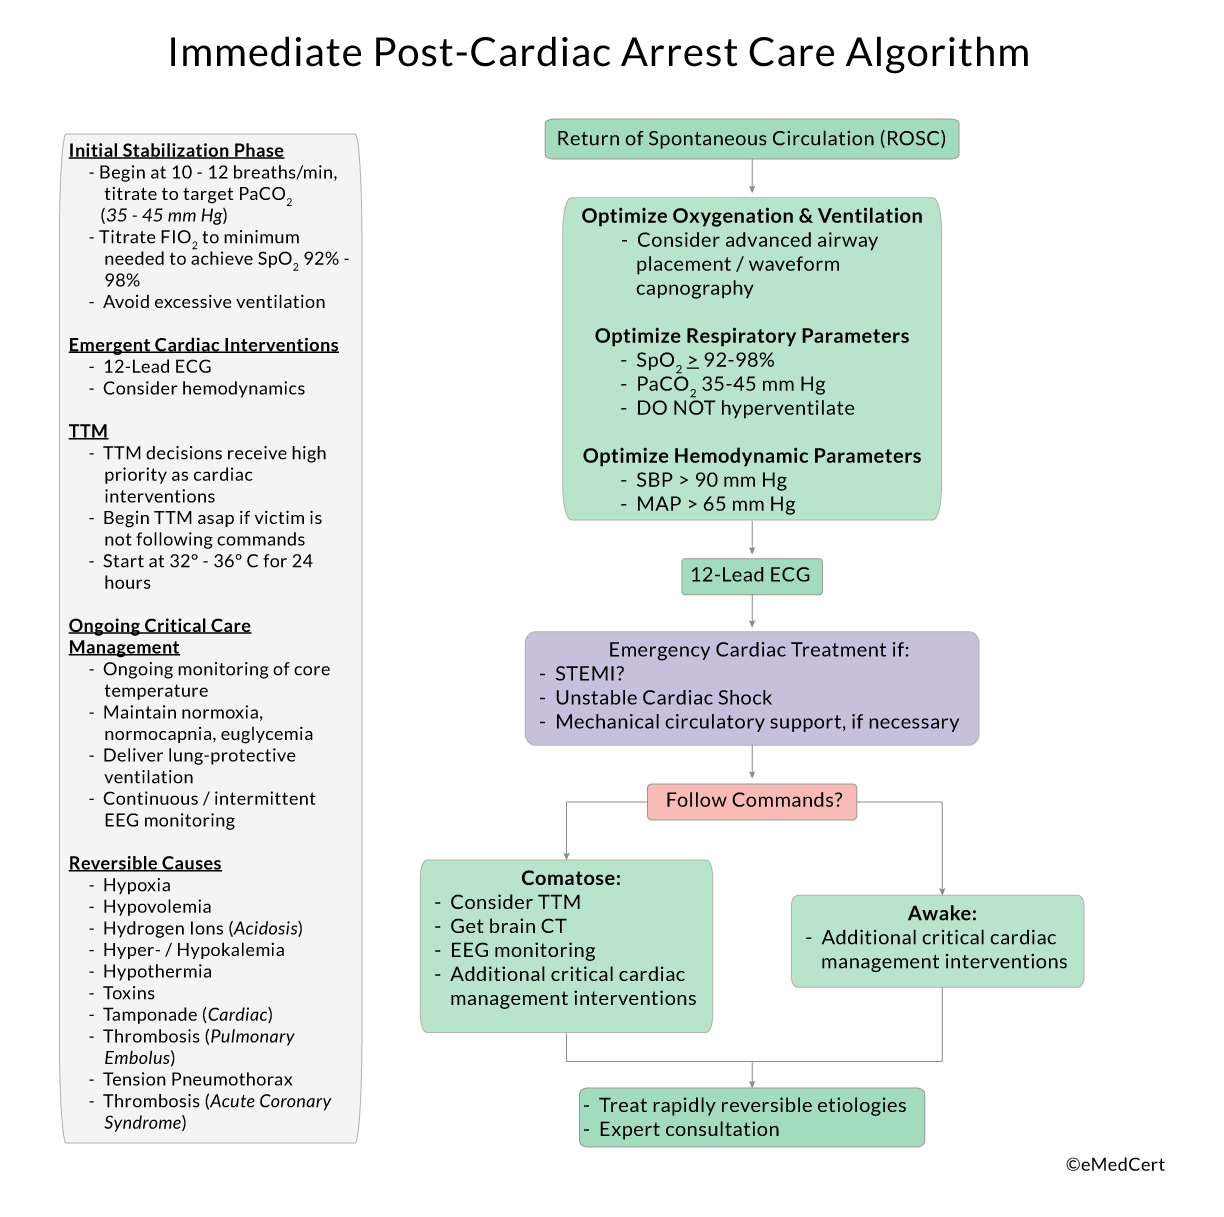 ACLS Algorithms Review: Immediate Post-Cardiac Arrest Care Algorithm